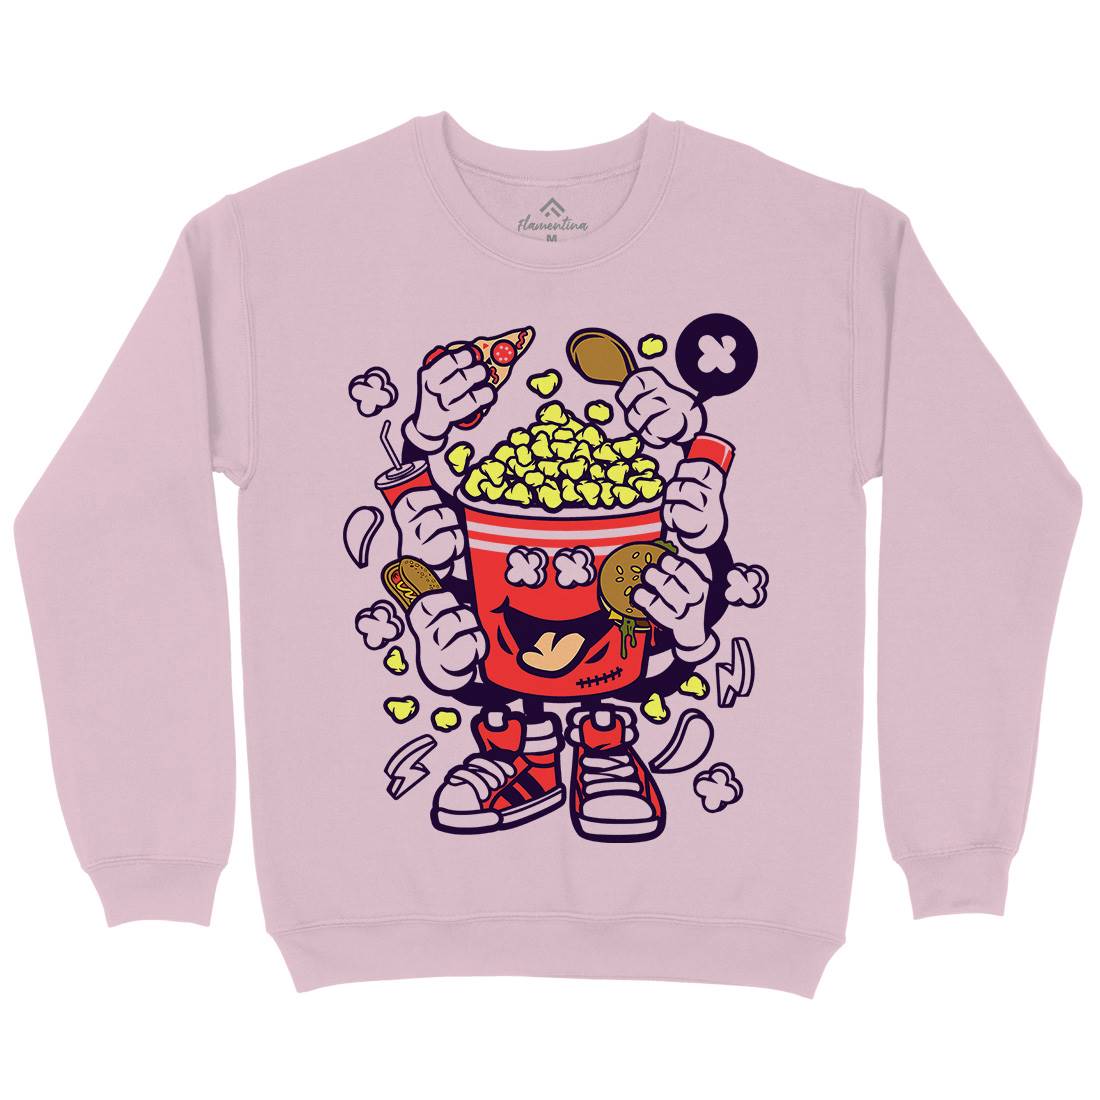 Popcorn Monster Kids Crew Neck Sweatshirt Food C197